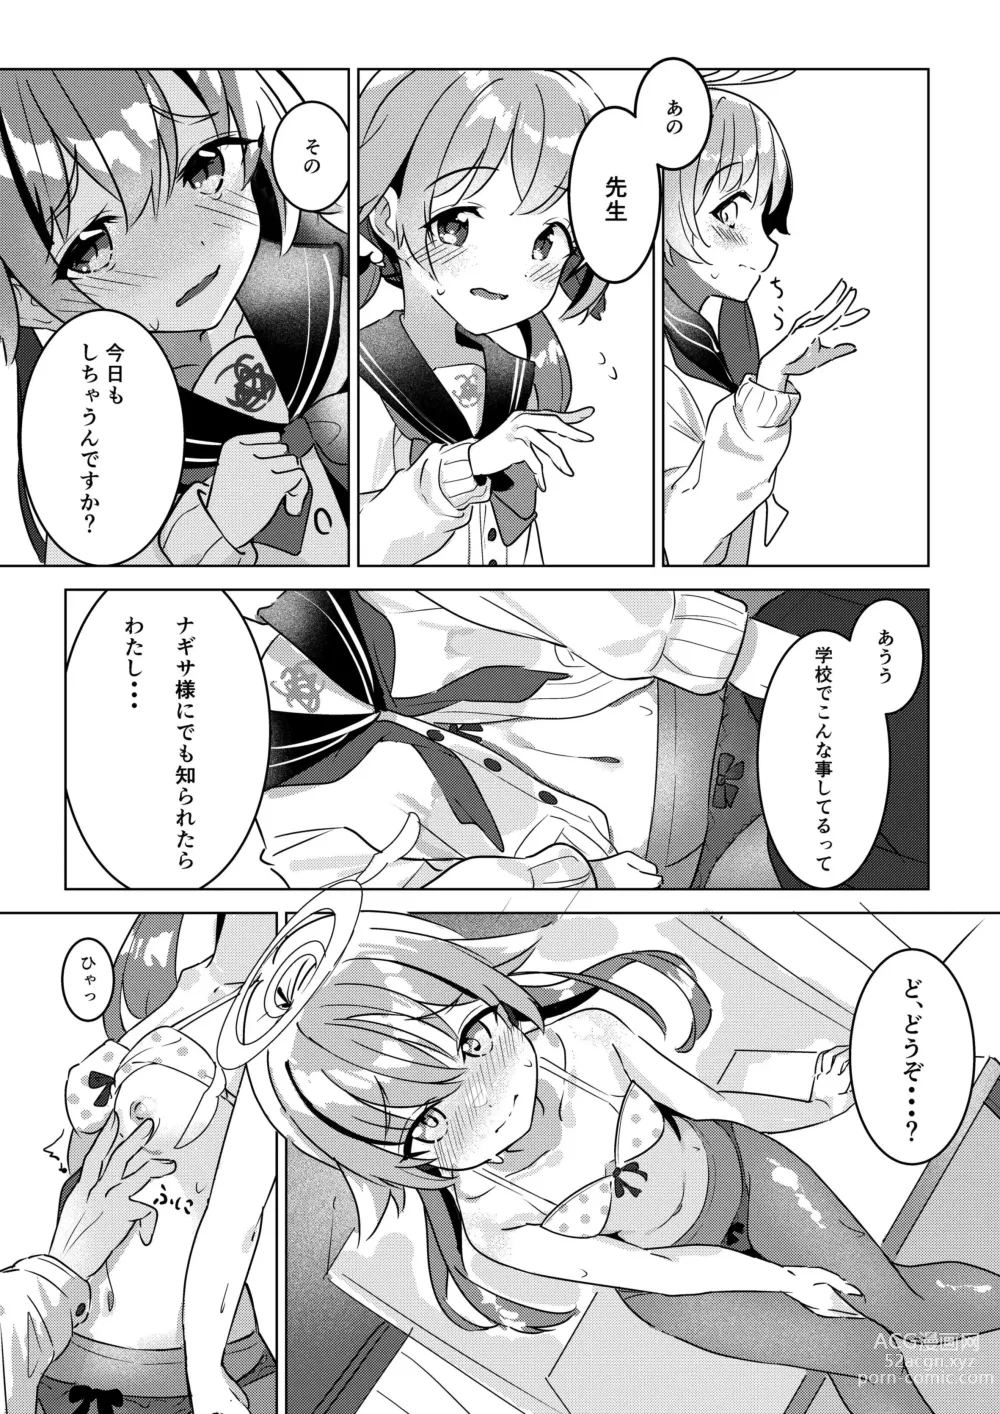 Page 2 of doujinshi Nicchoku no Hifumi to H